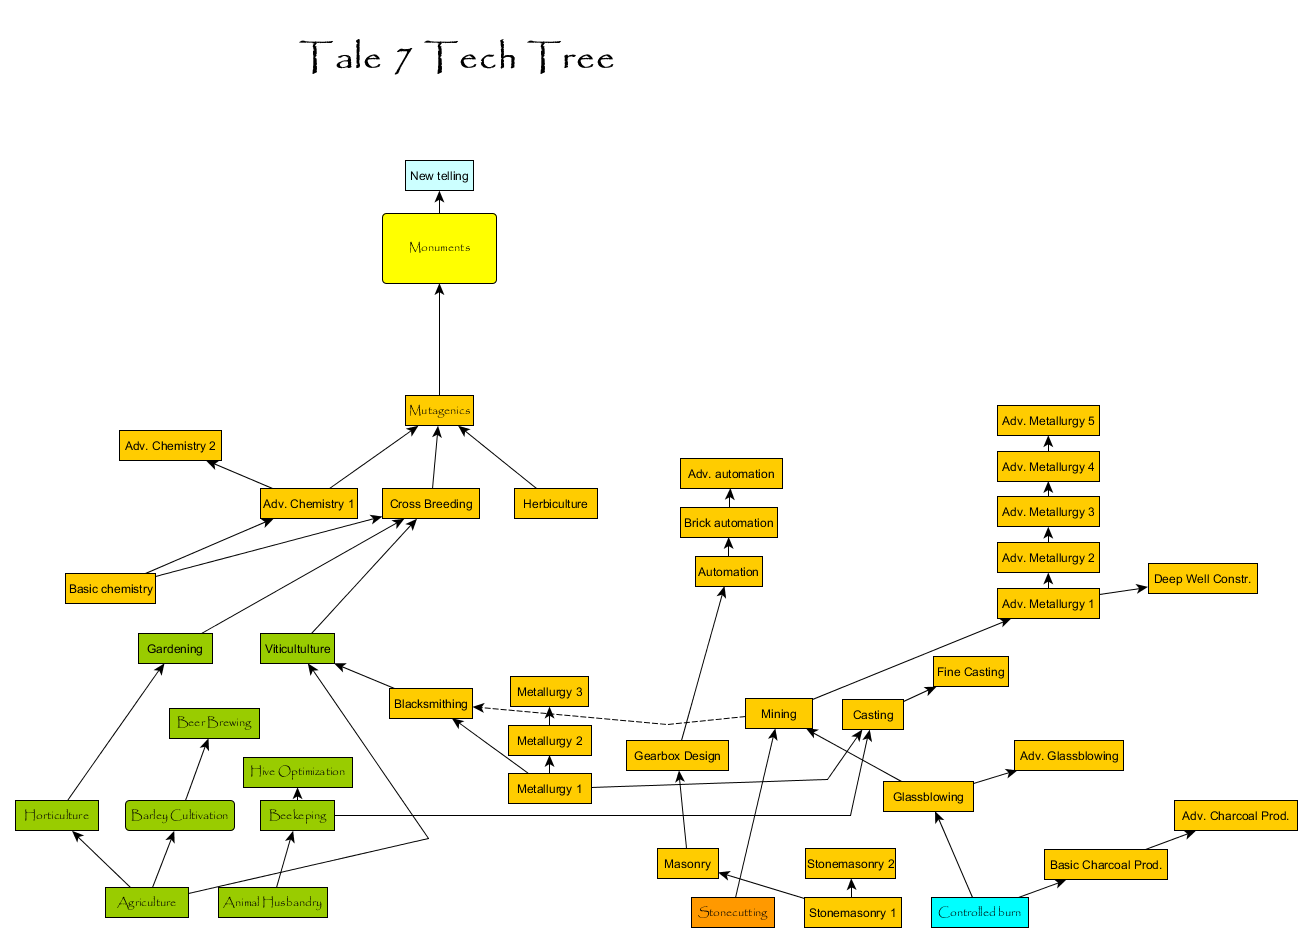 Tale7 tech tree test1 1.png